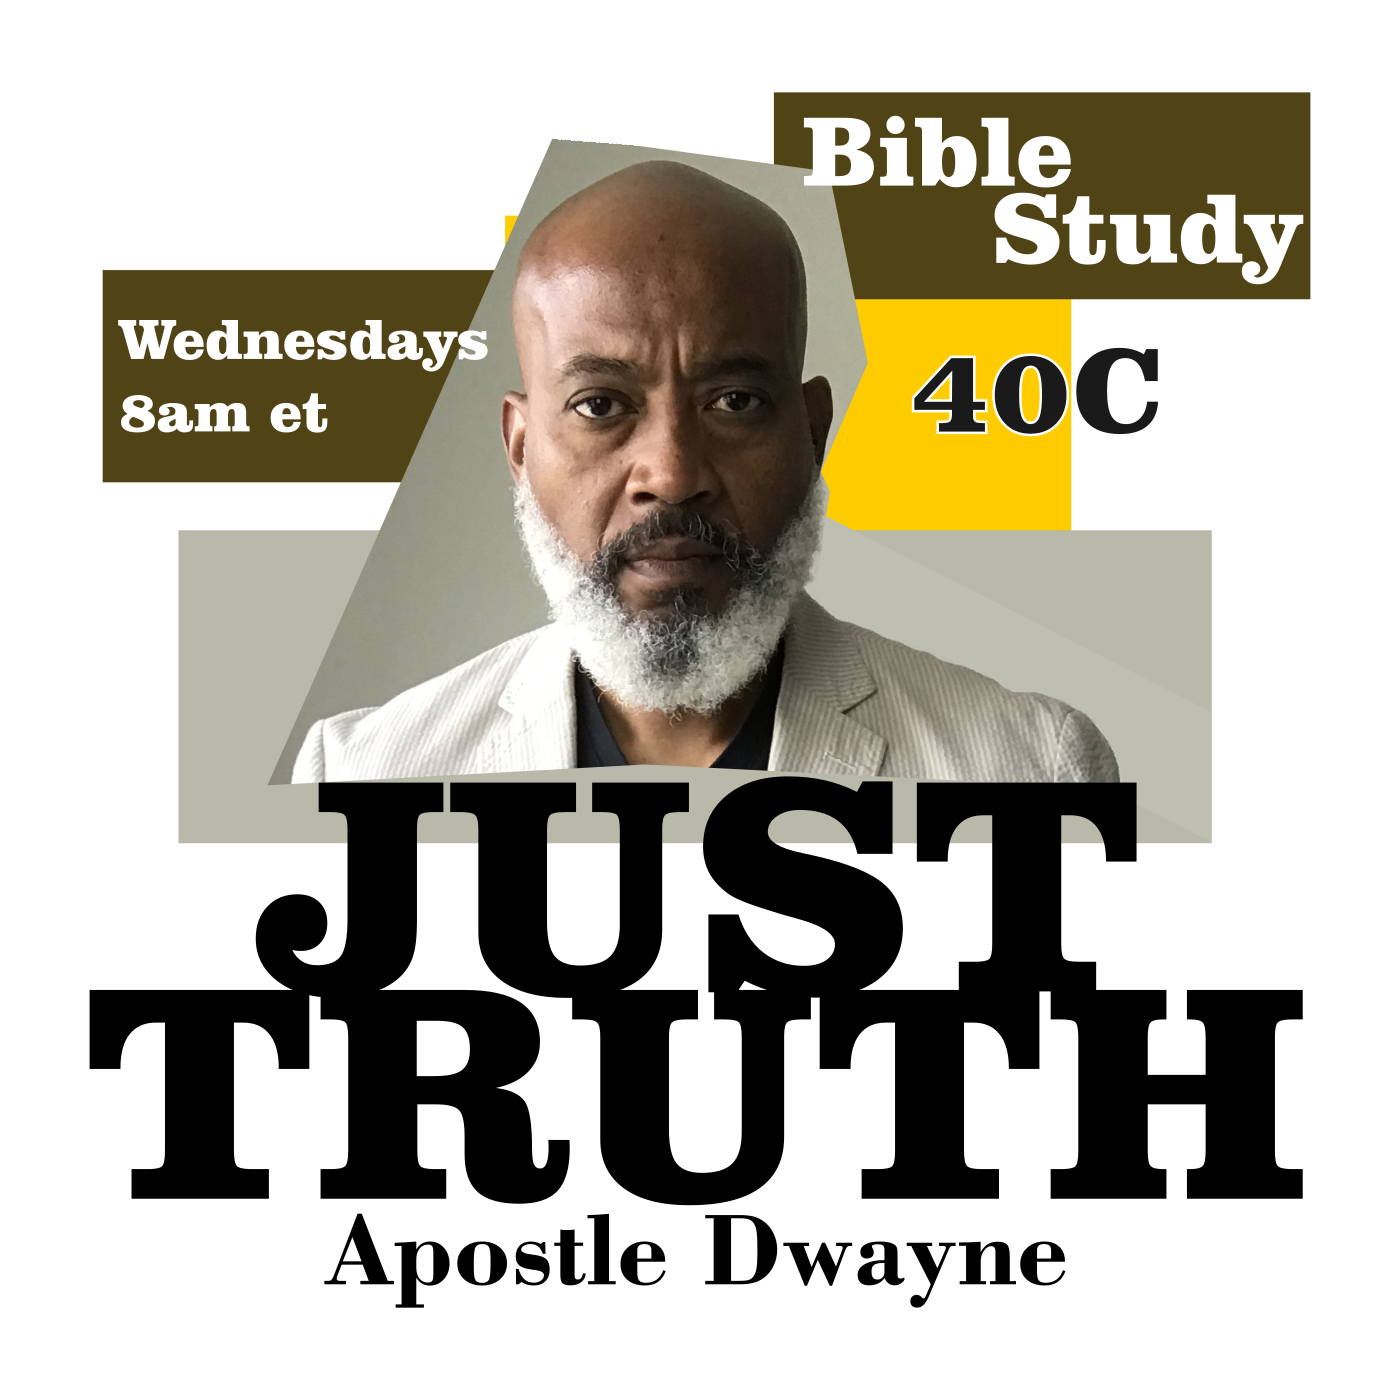 Bible Study With Apostle Dwayne